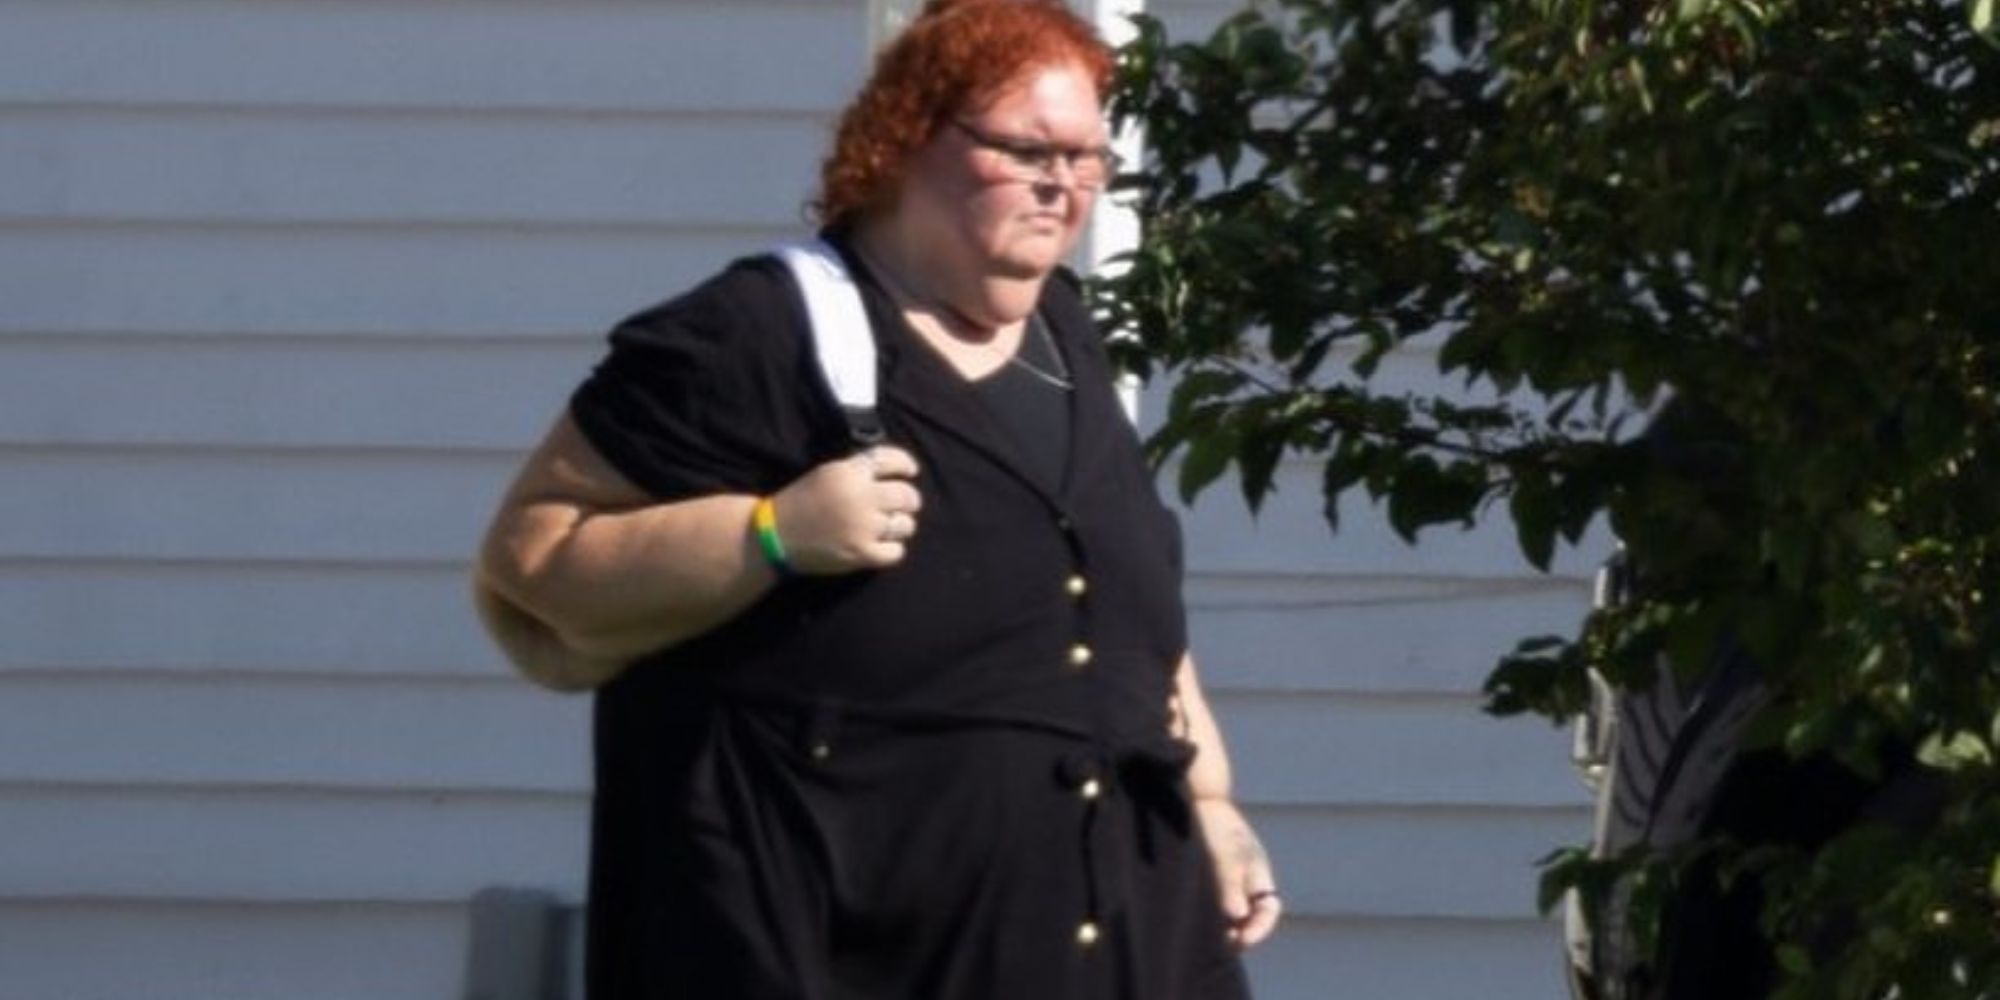 1000-lb Sisters Tammy Slaton in black dress, walking outside